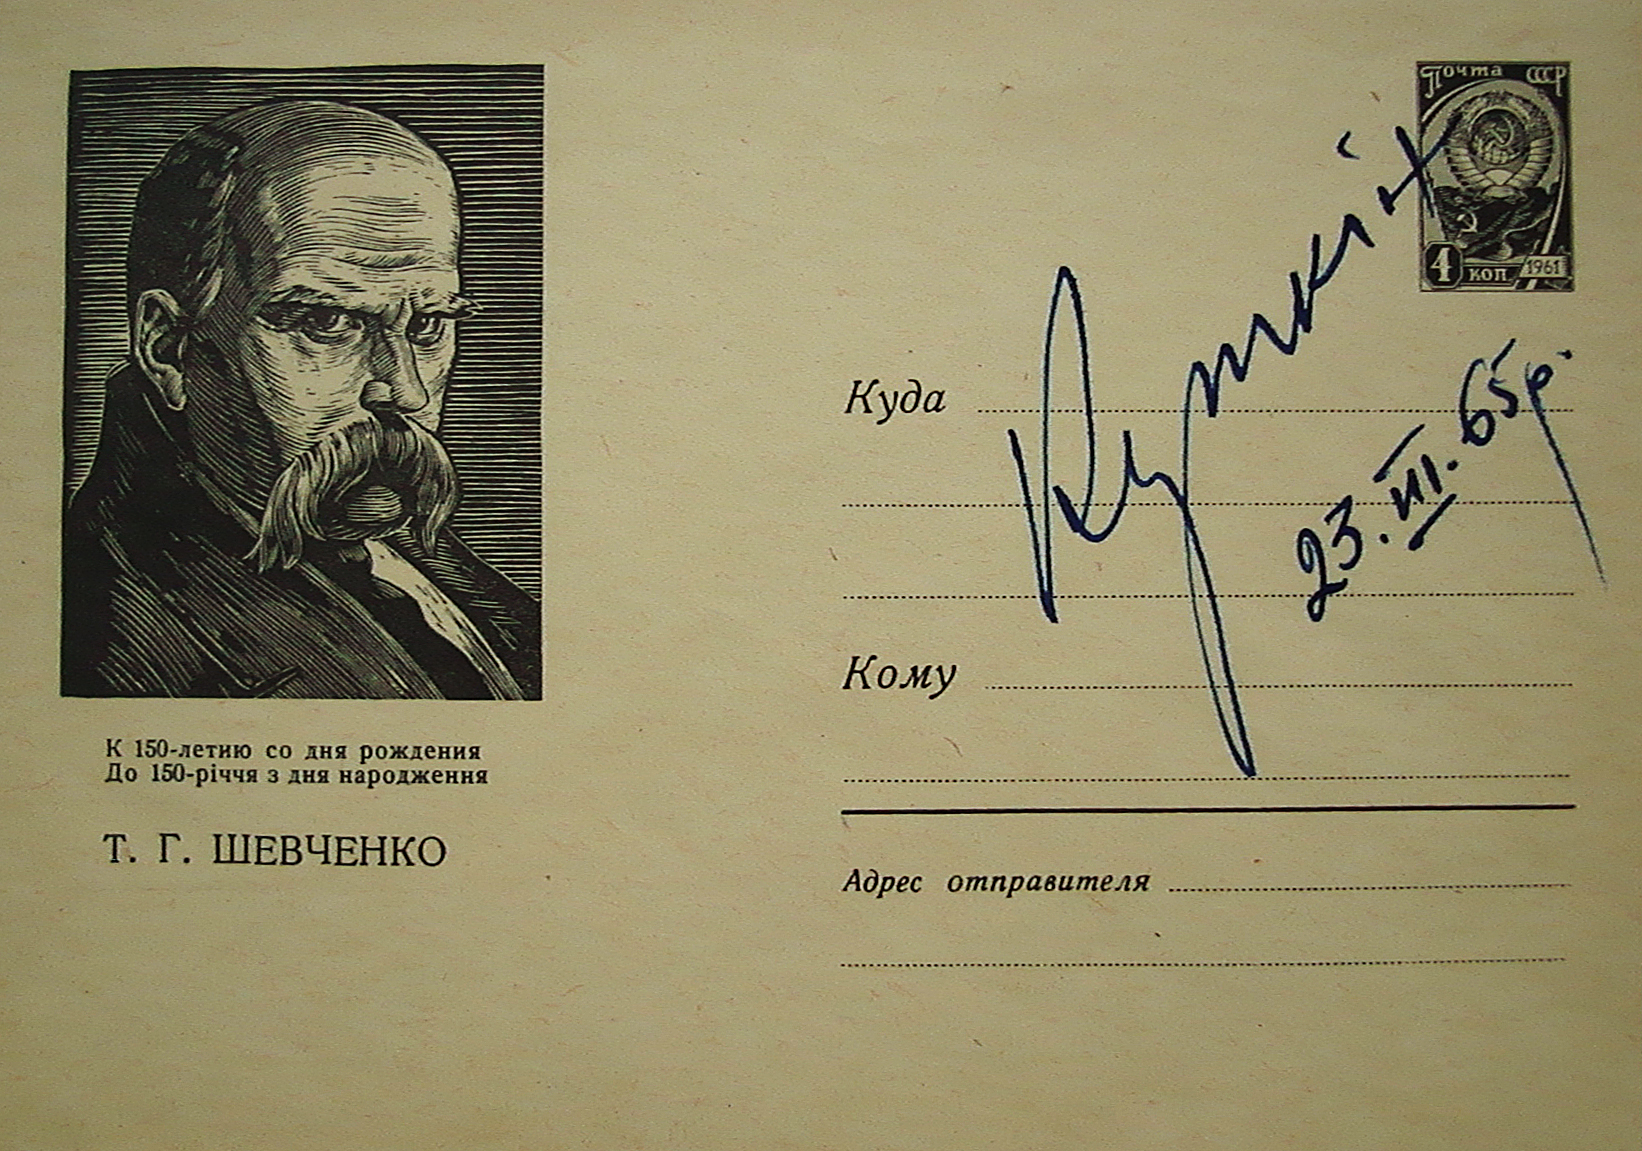 Листівка із портретом Т. Шевченка художника Б. Куткіна. Із автографом автора